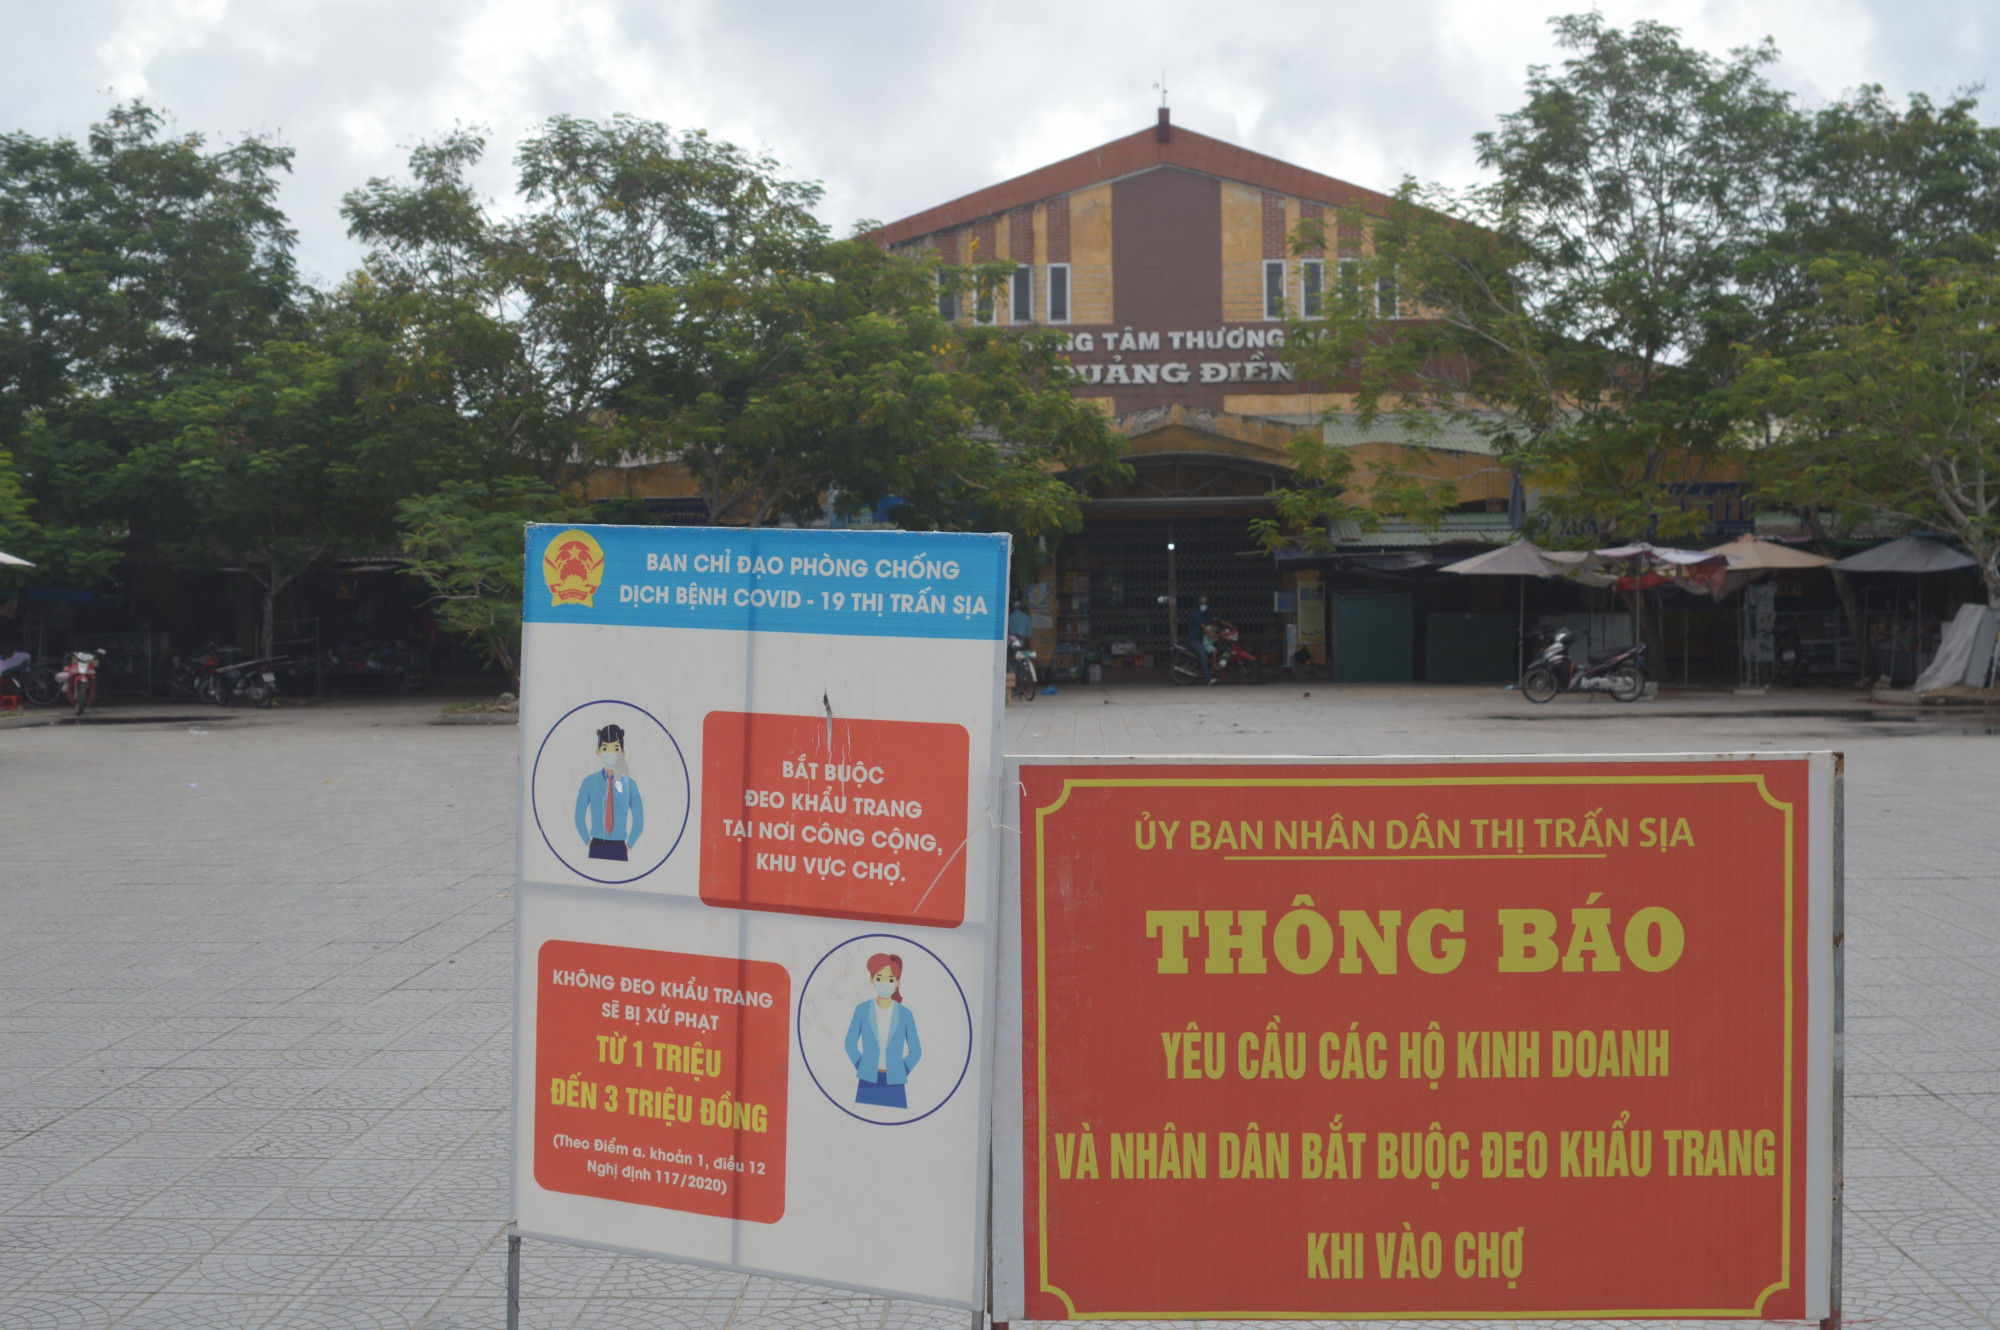 Tạm dừng hoạt động Trung tâm thương mại huyện Quảng Điền do có ca nghi nhiễm COVID-19 tại quầy hàng cá